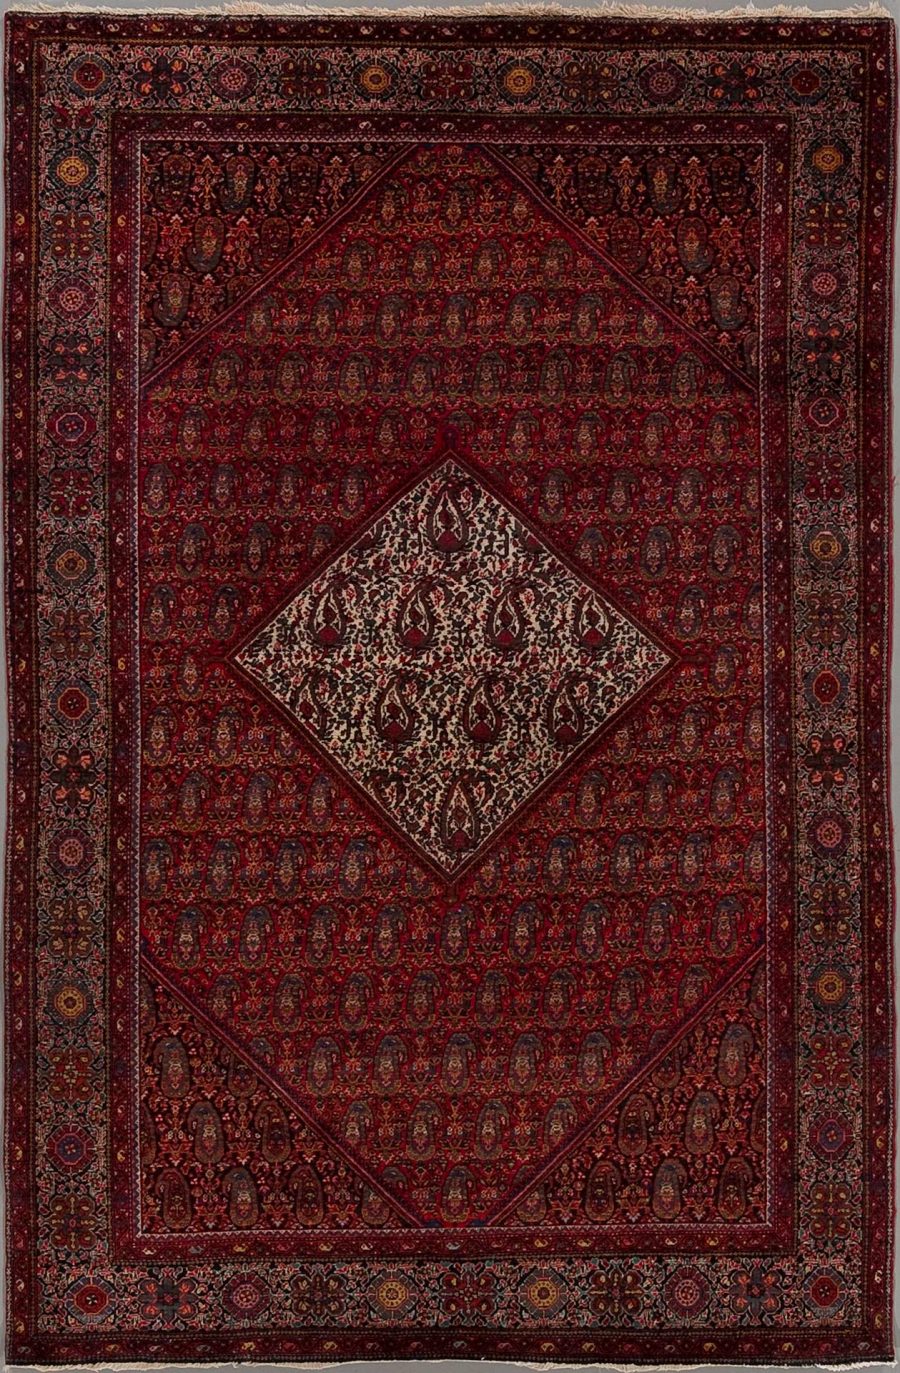 Traditioneller persischer Teppich mit aufwendigen Mustern und einem zentralen Medaillon, umgeben von Bordüren in Dunkelrot und Blautönen.